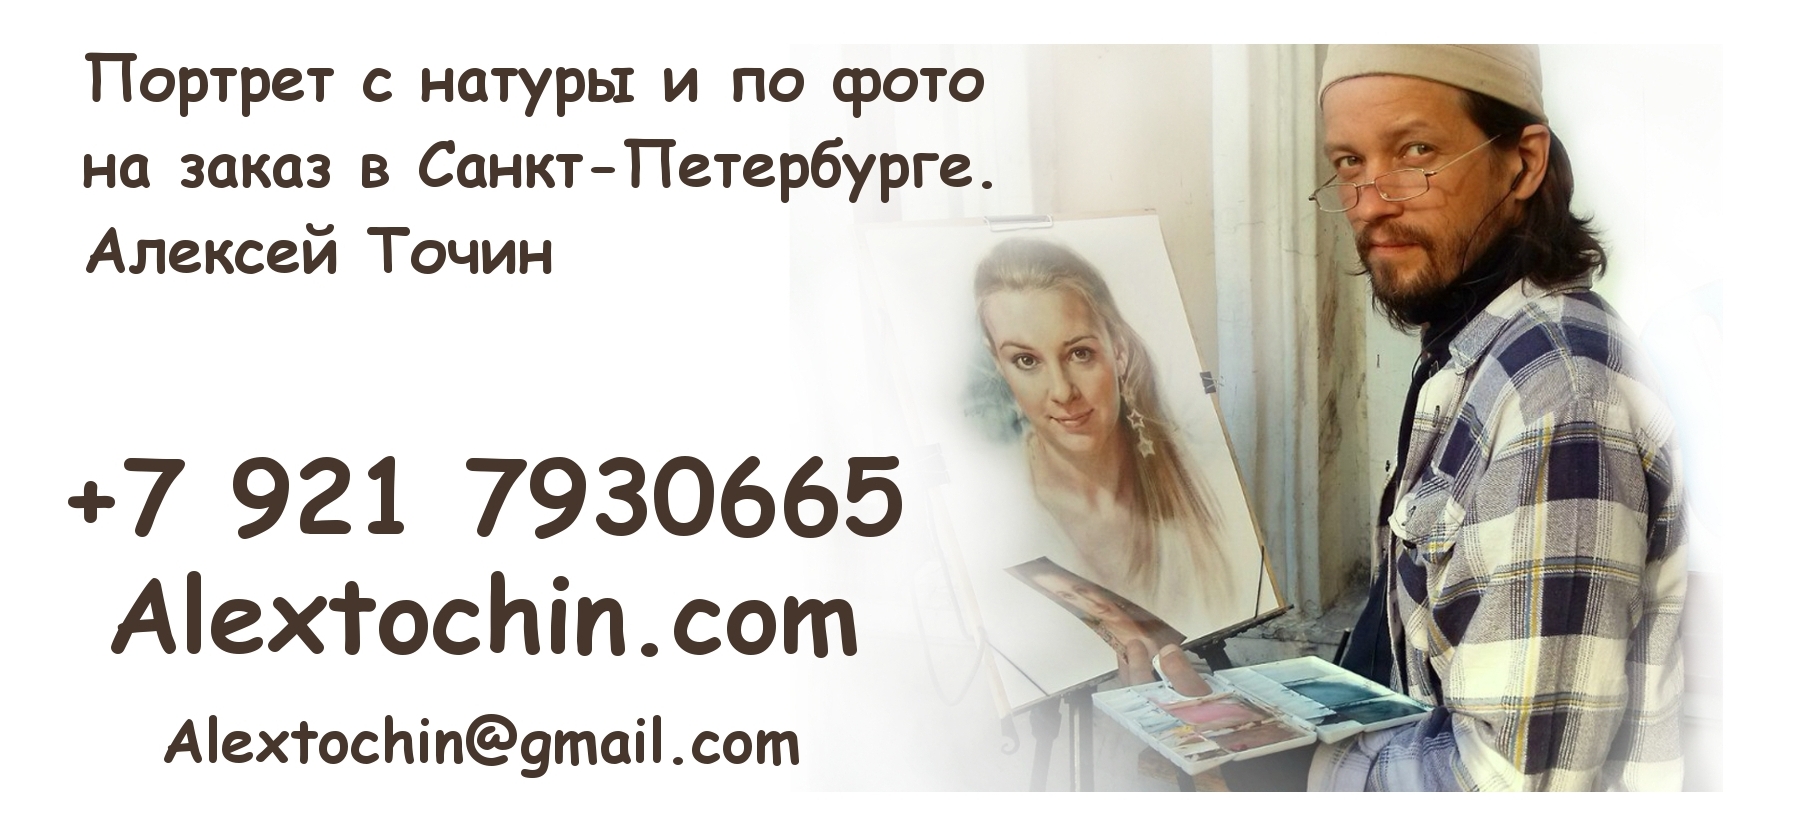 Портрет с натуры и по фотографии на заказ в СПб. Алексей Точин. +79217930665, alextochin@gmail.com